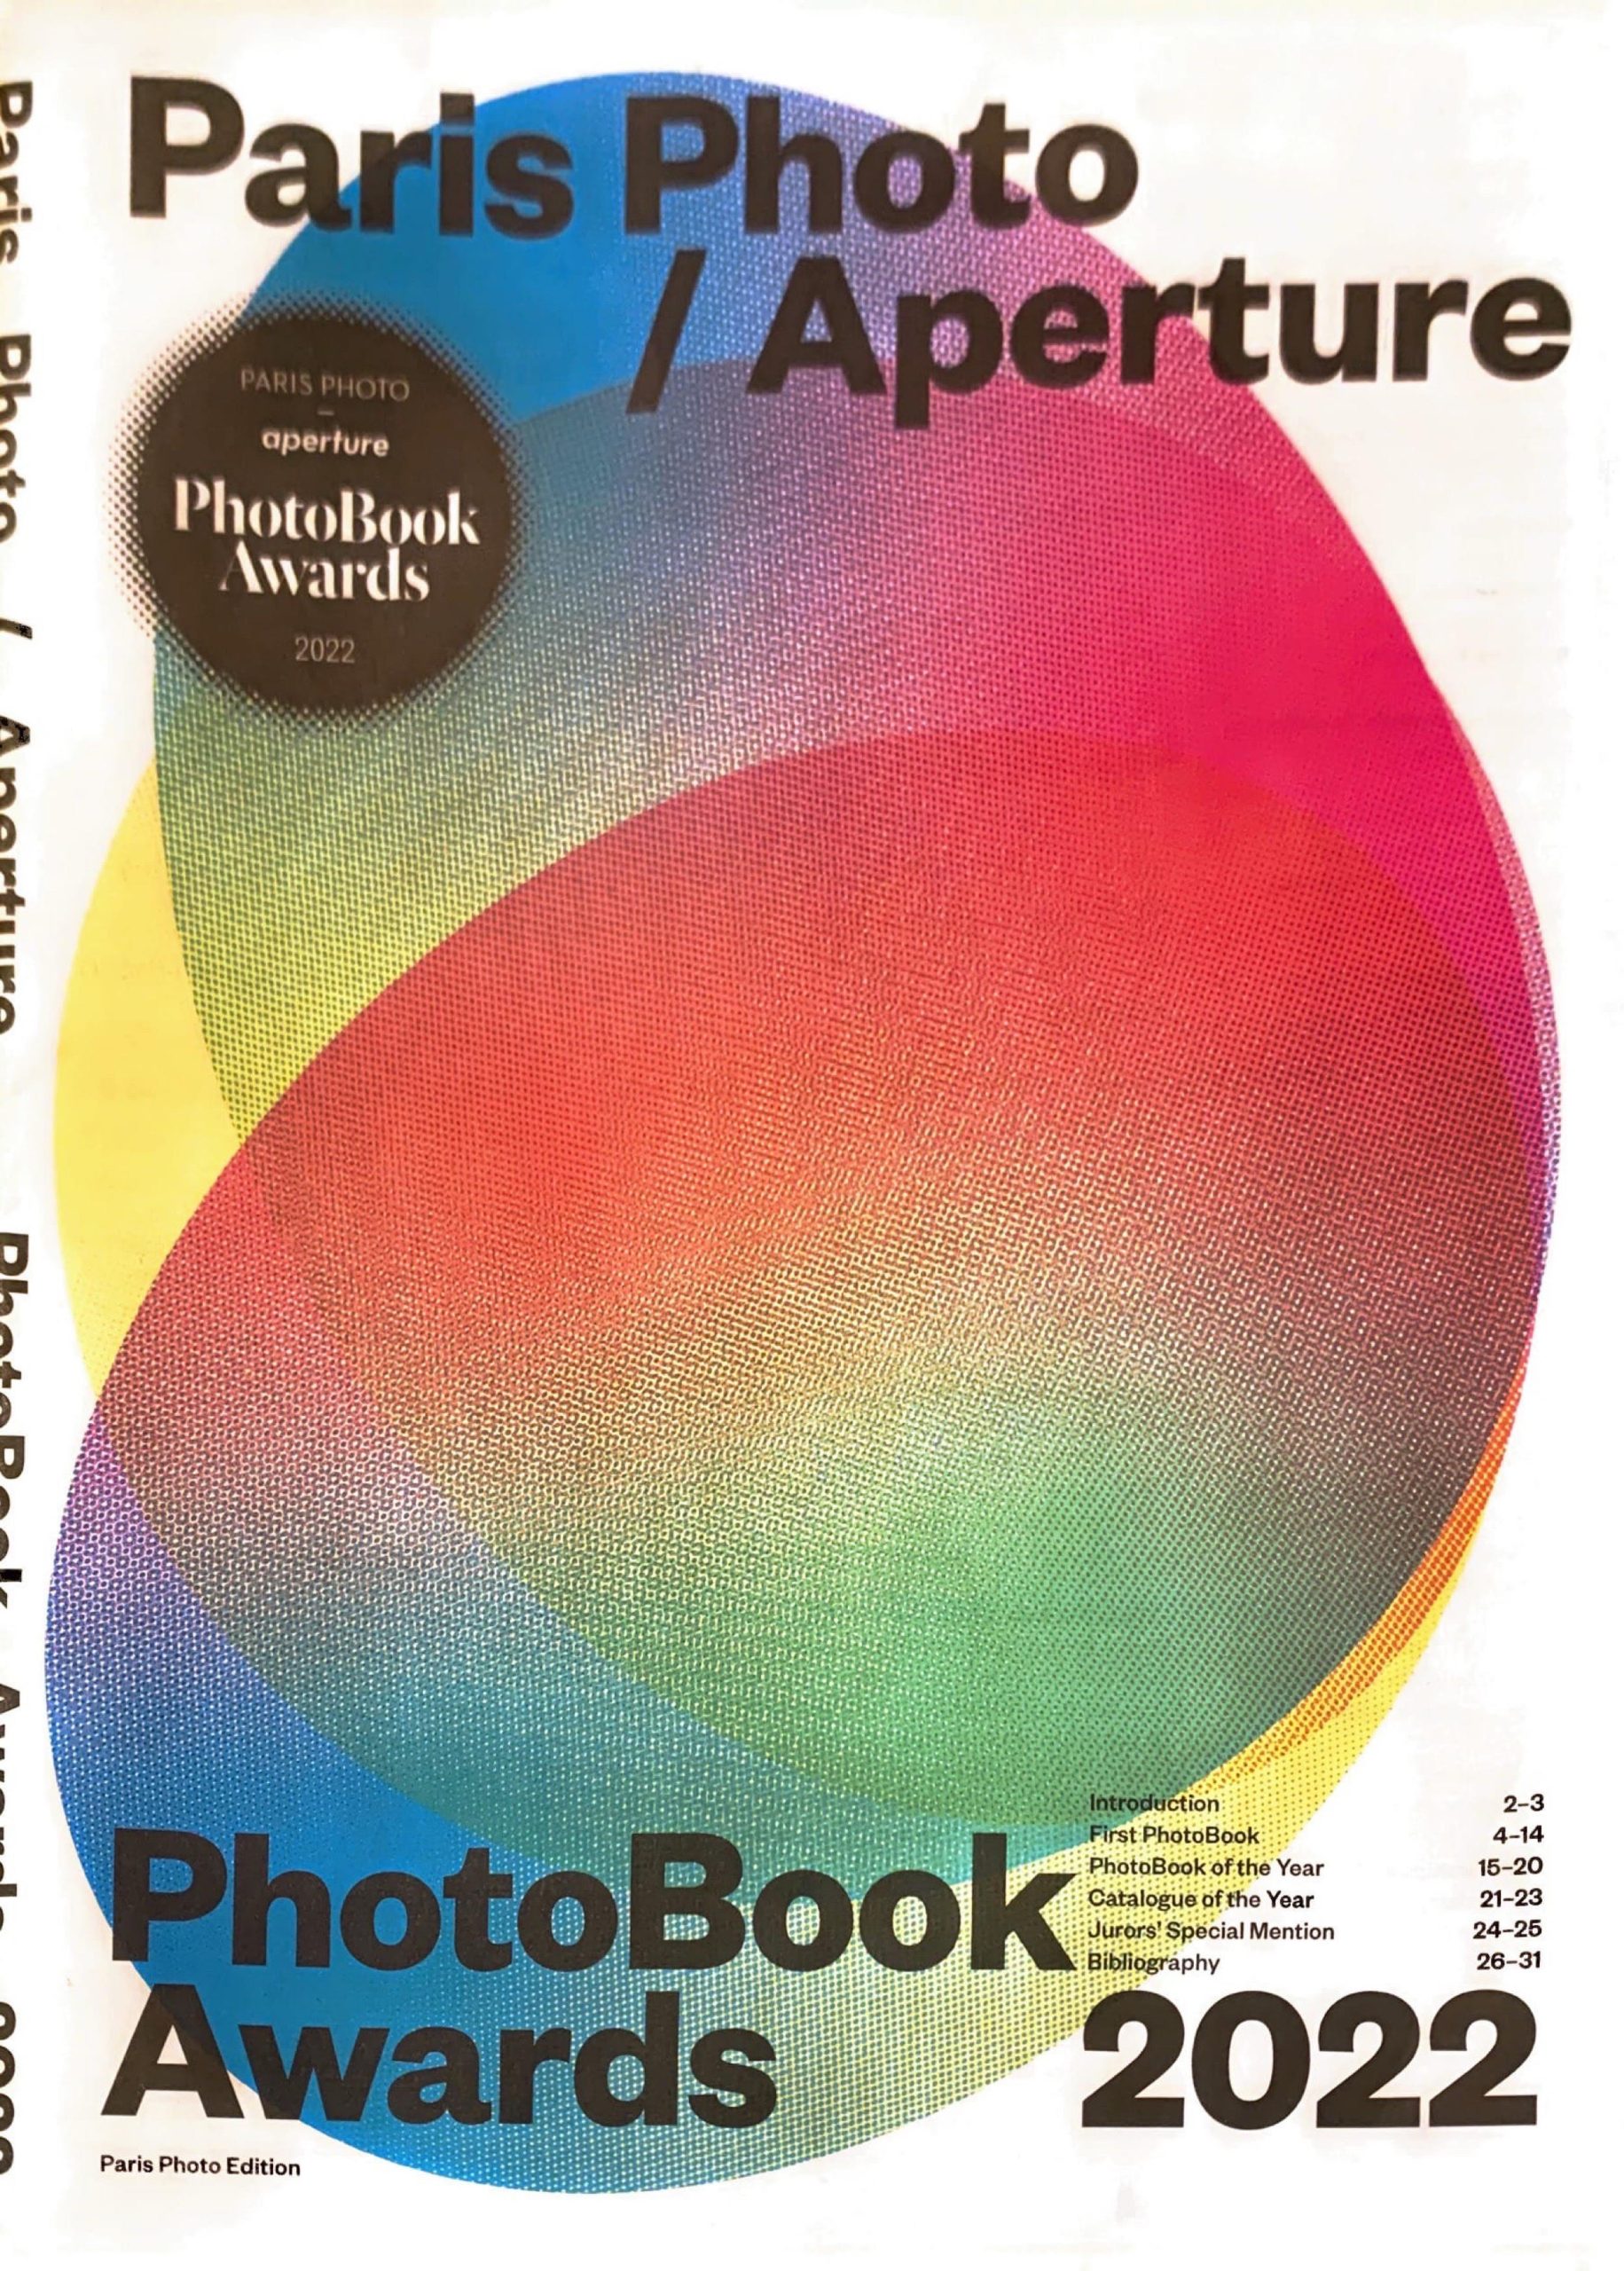 Photobook awards 2022 paris photo ,aperature